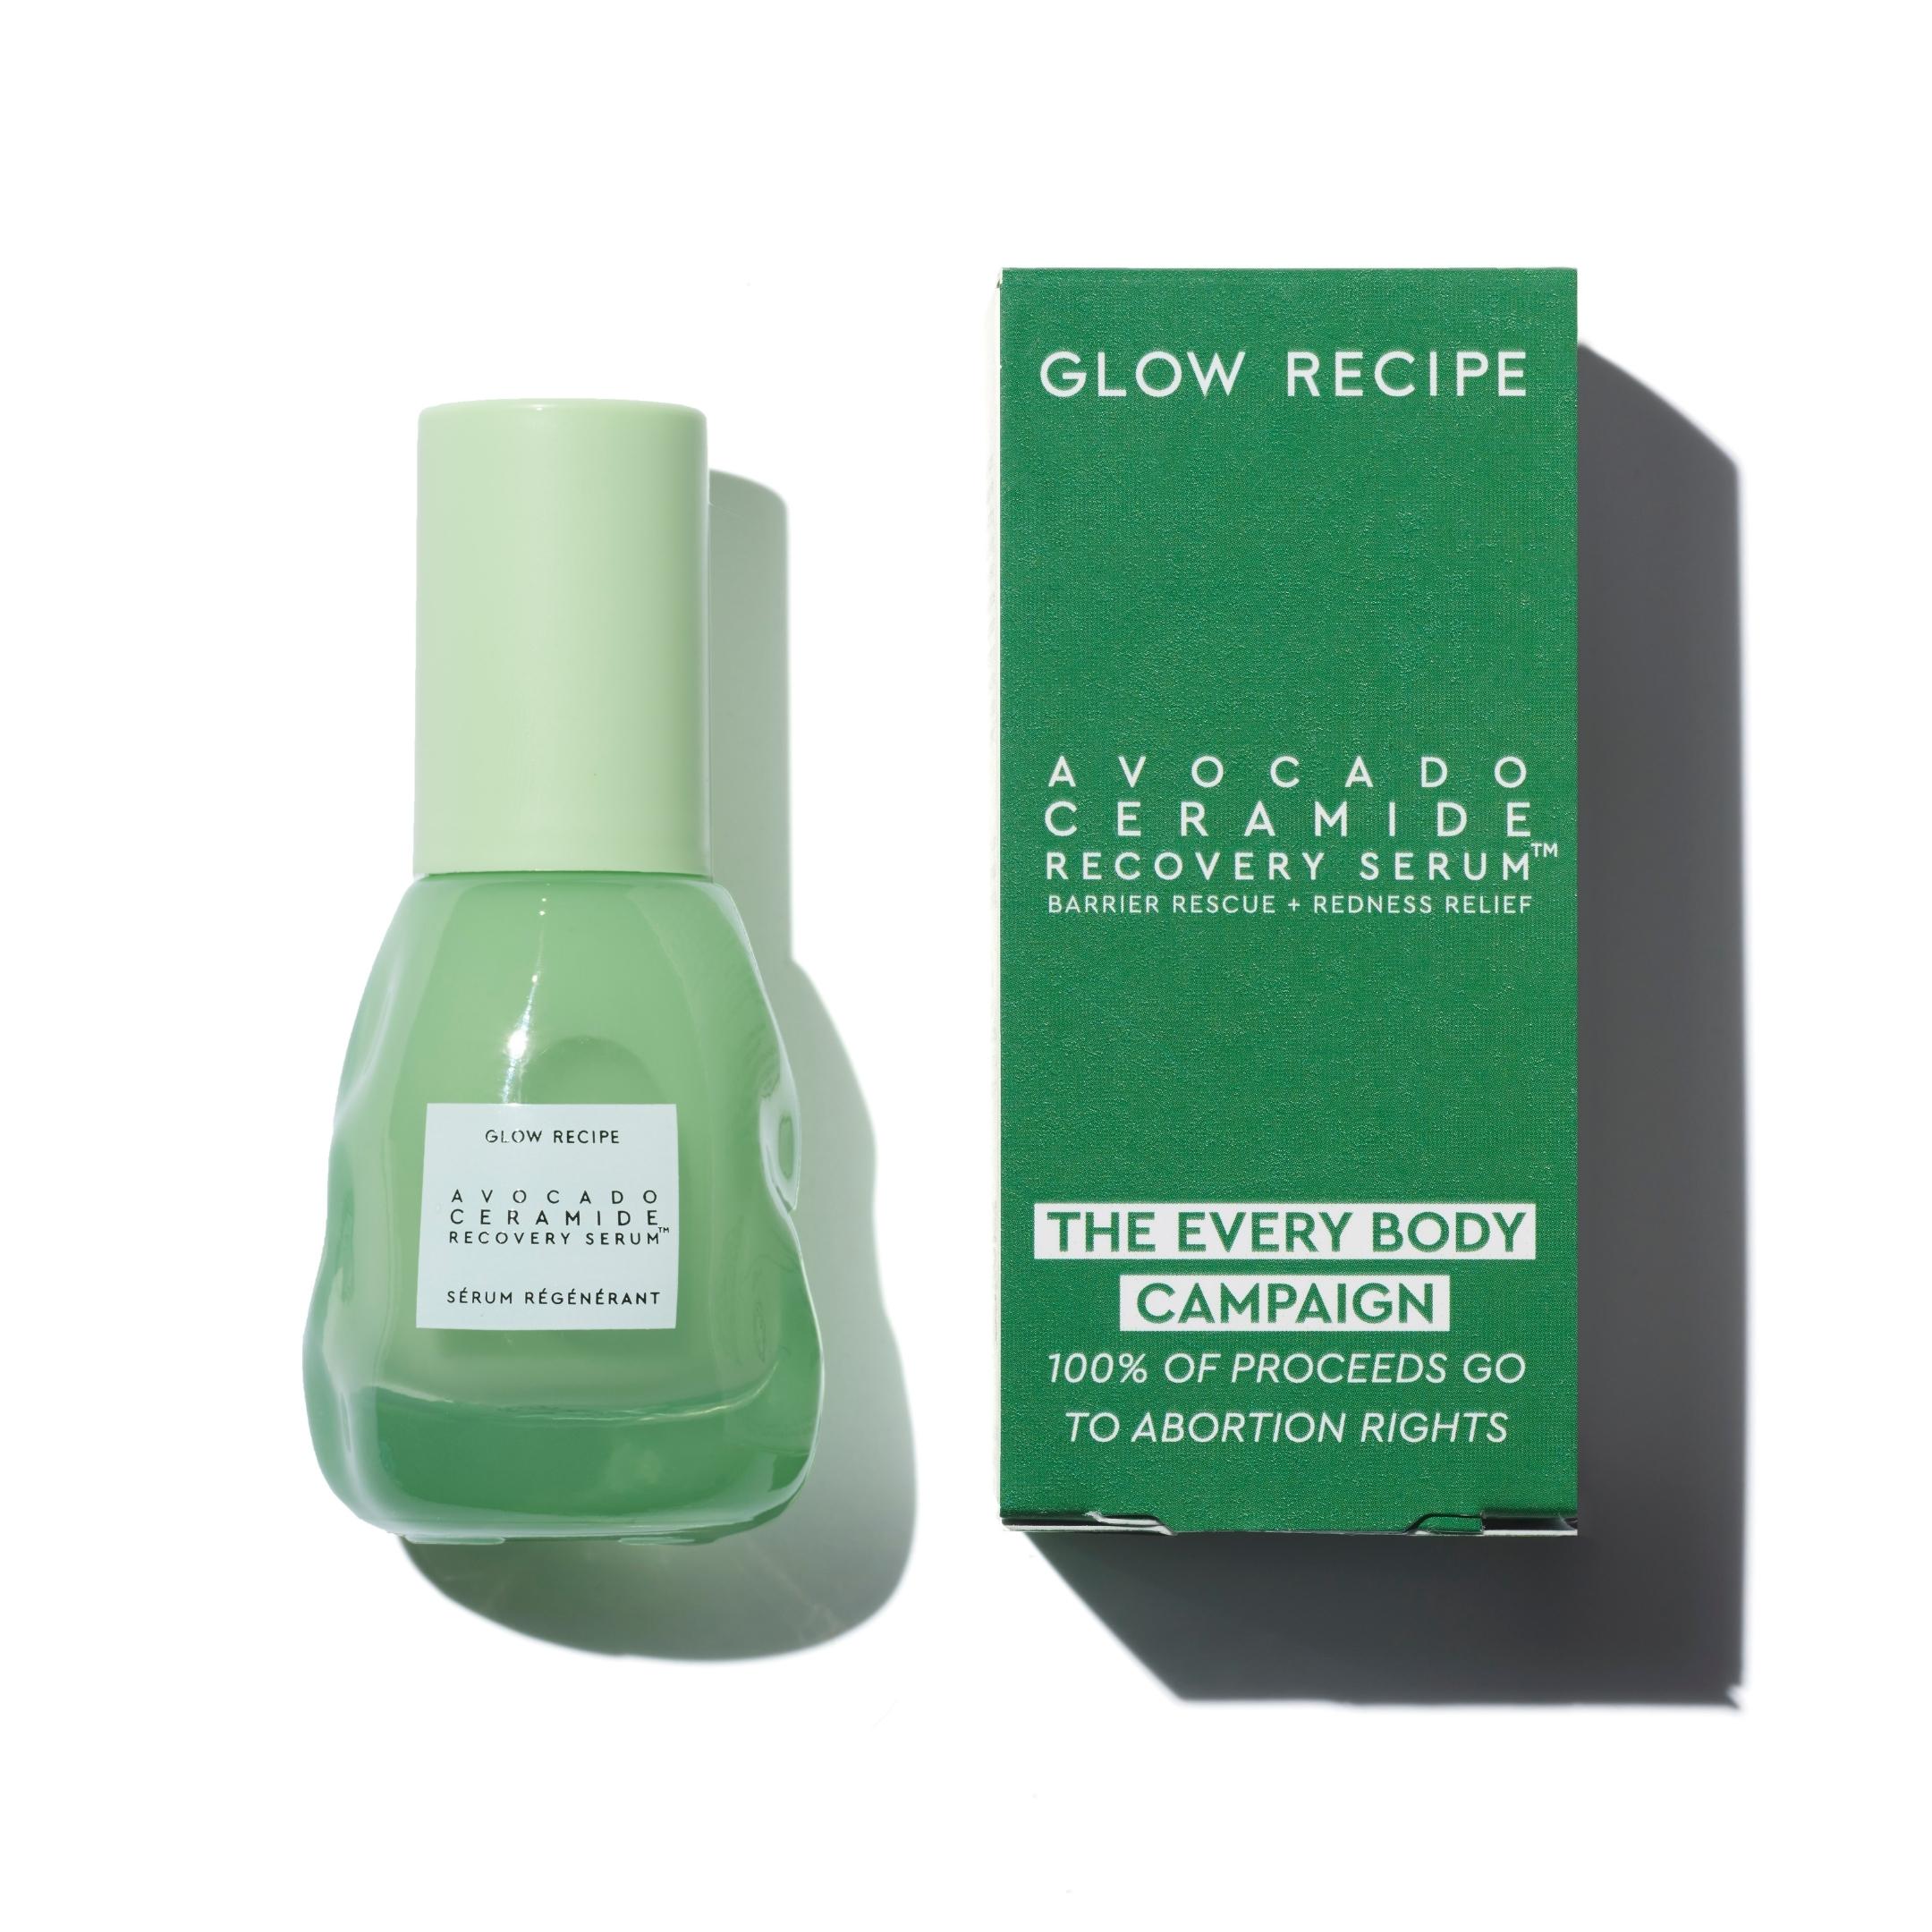 Glow Recipe, The Every Body Campaign Avocado Ceramide Recovery Serum